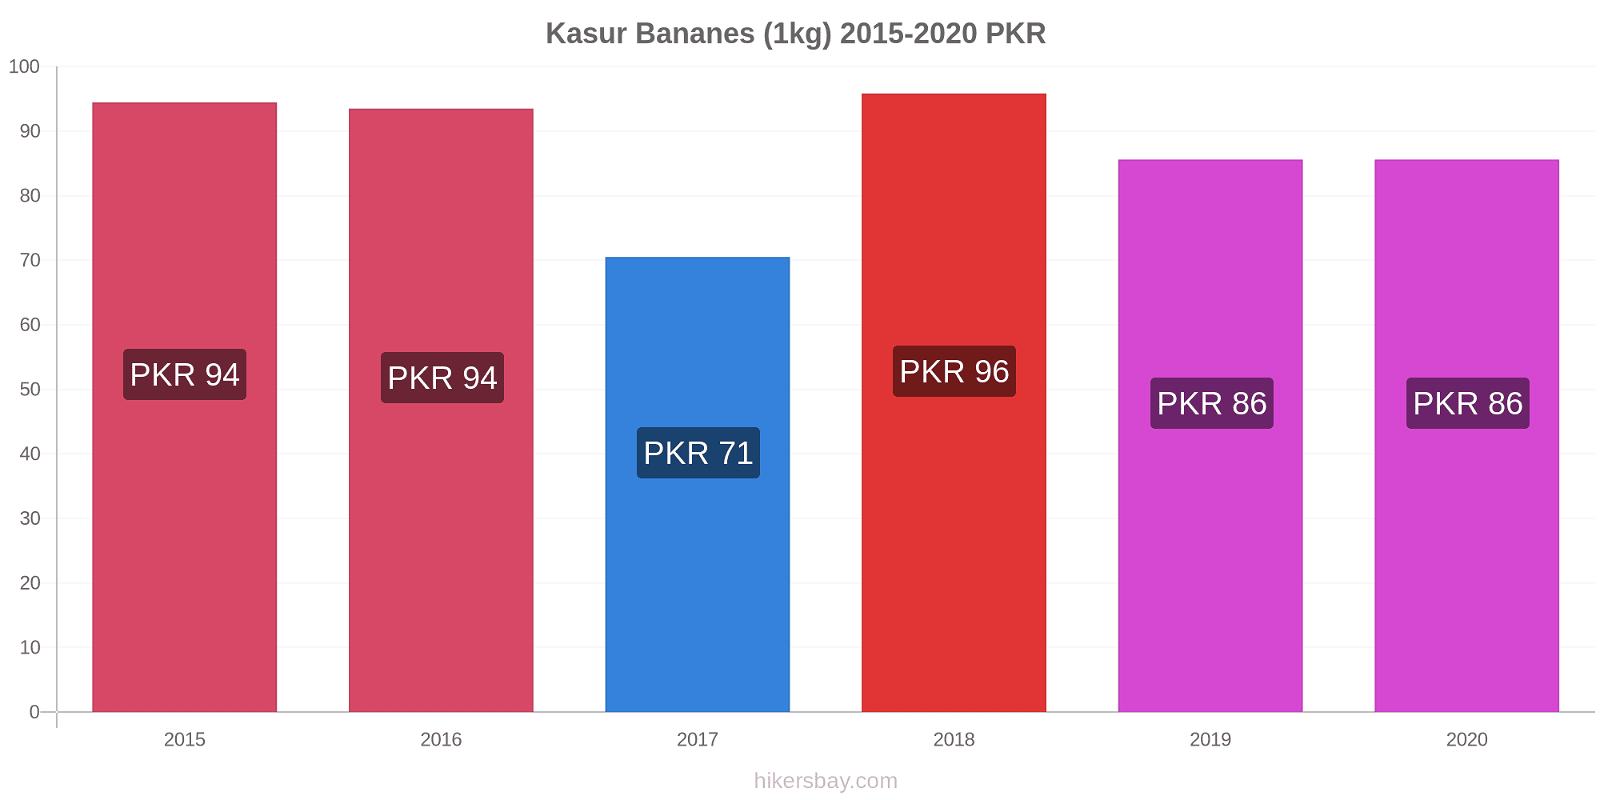 Kasur changements de prix Bananes (1kg) hikersbay.com